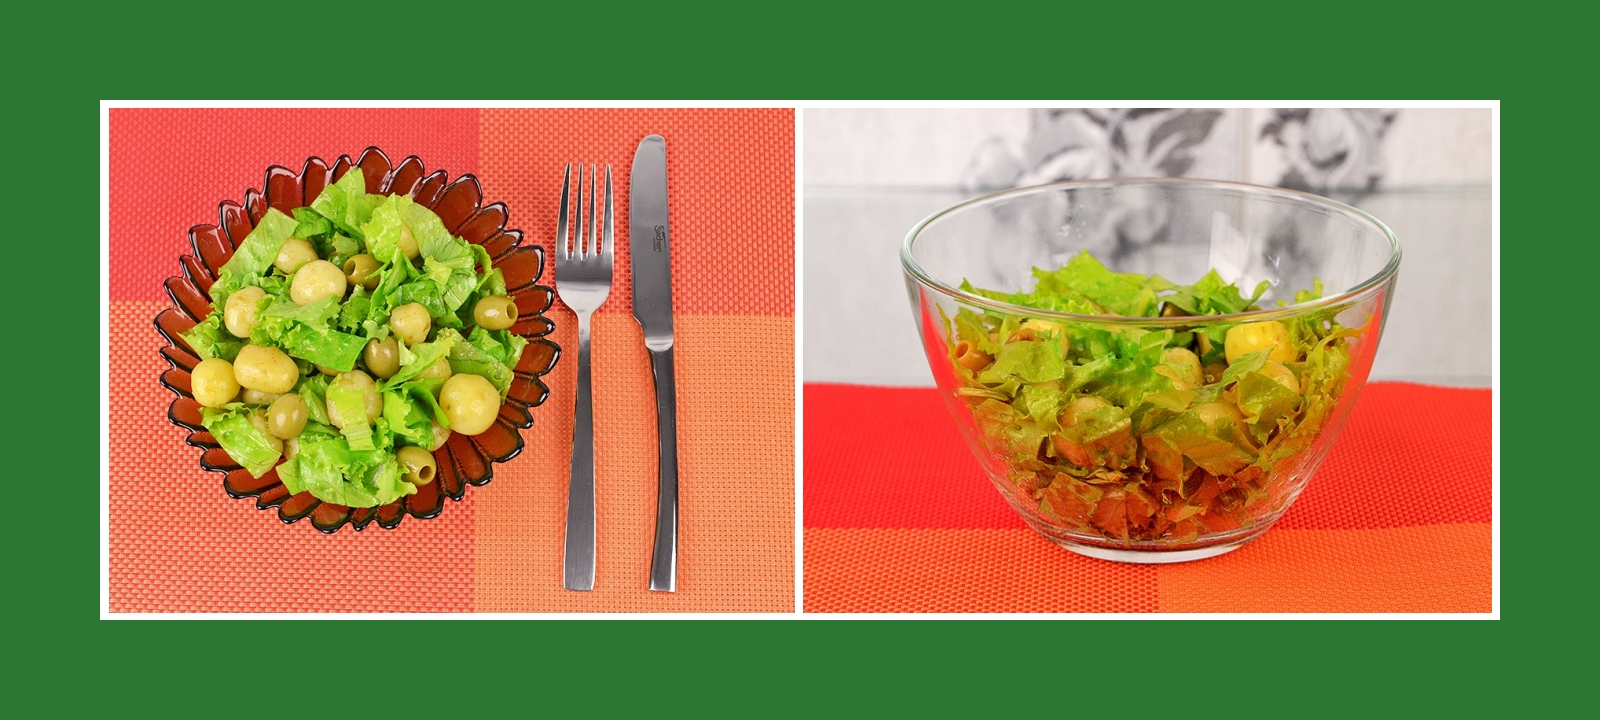 Erfrischender Salat aus Kartoffeln, Gartenssalat und grünen Oliven